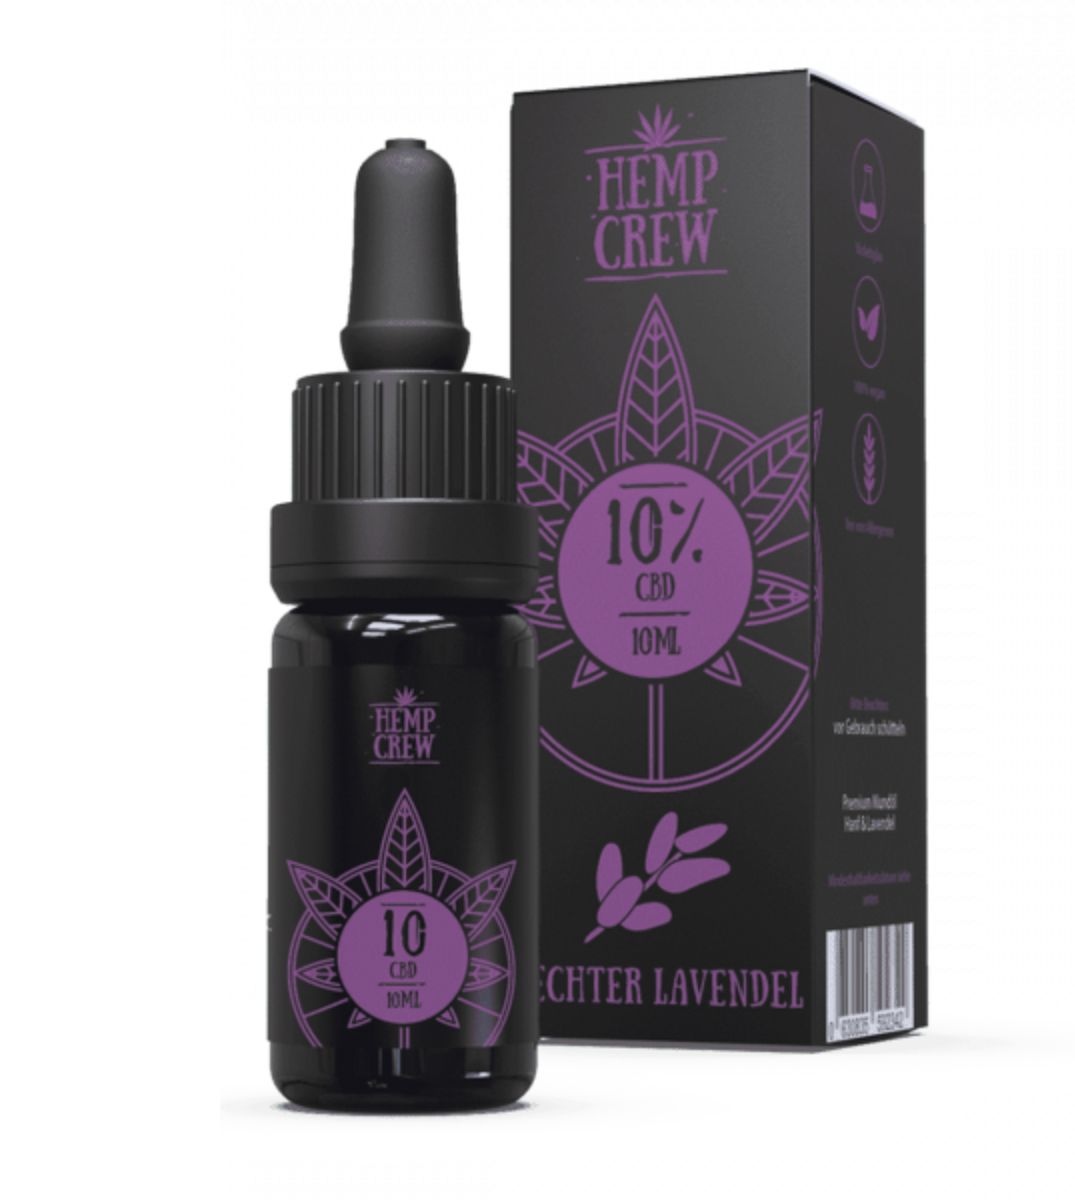 HEMP CREW 10% Echter Lavendel CBD Öl, 10ml in dunkler Glasflasche mit Pipette, Verpackung mit stilisiertem Lavendel- und Hanfblätter-Design